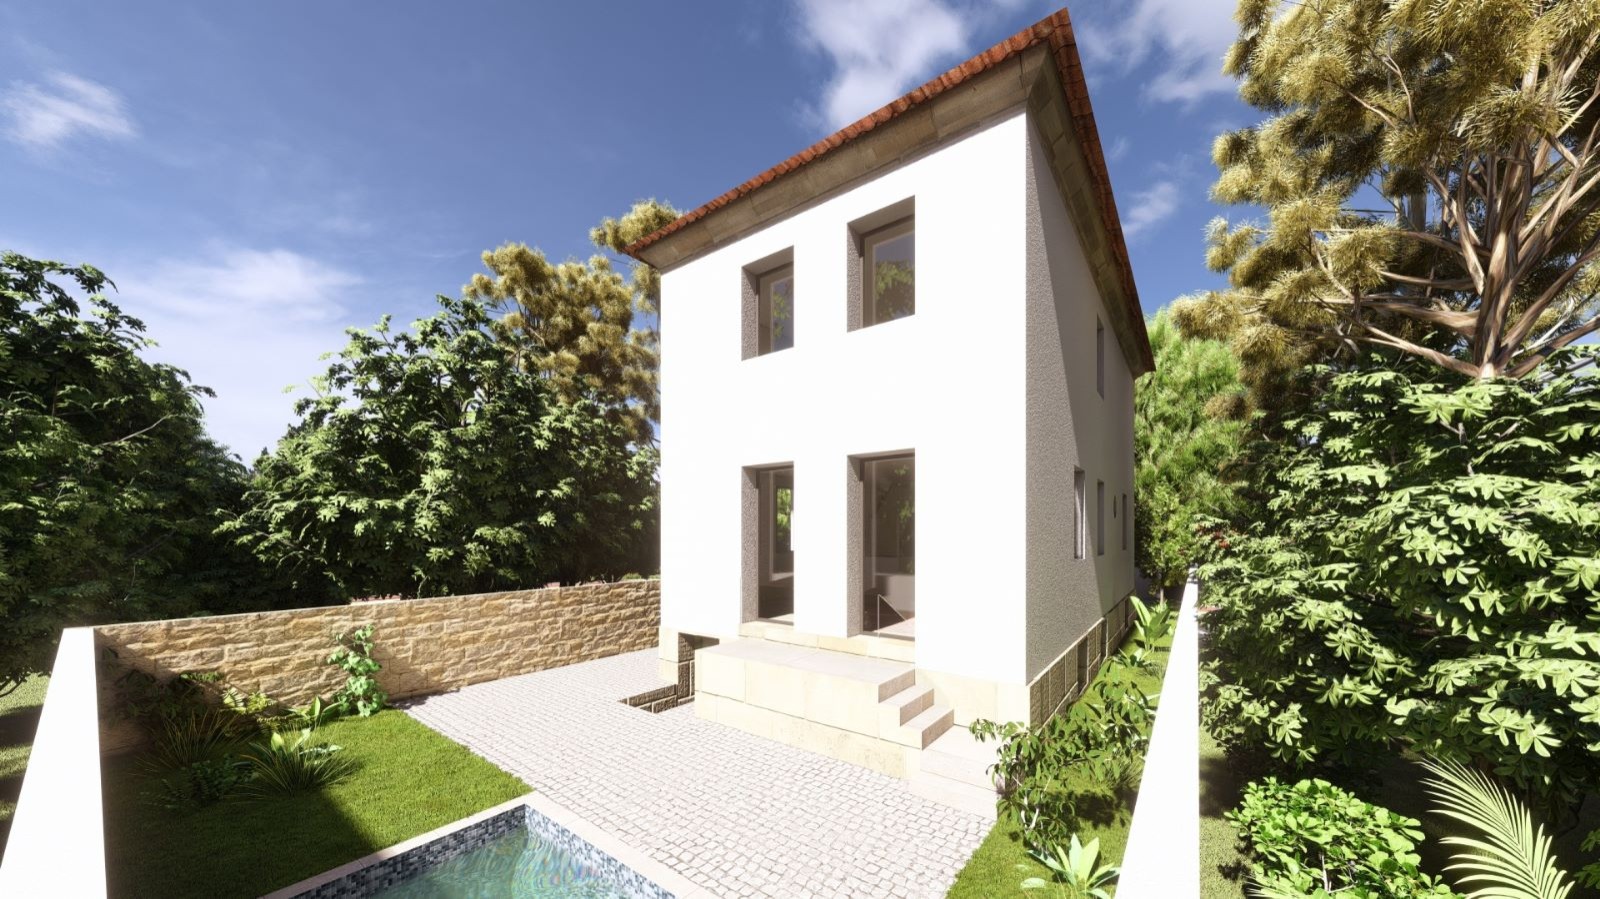 4 bedroom house - undergoing renovation, for sale - Serralves - Porto_238683